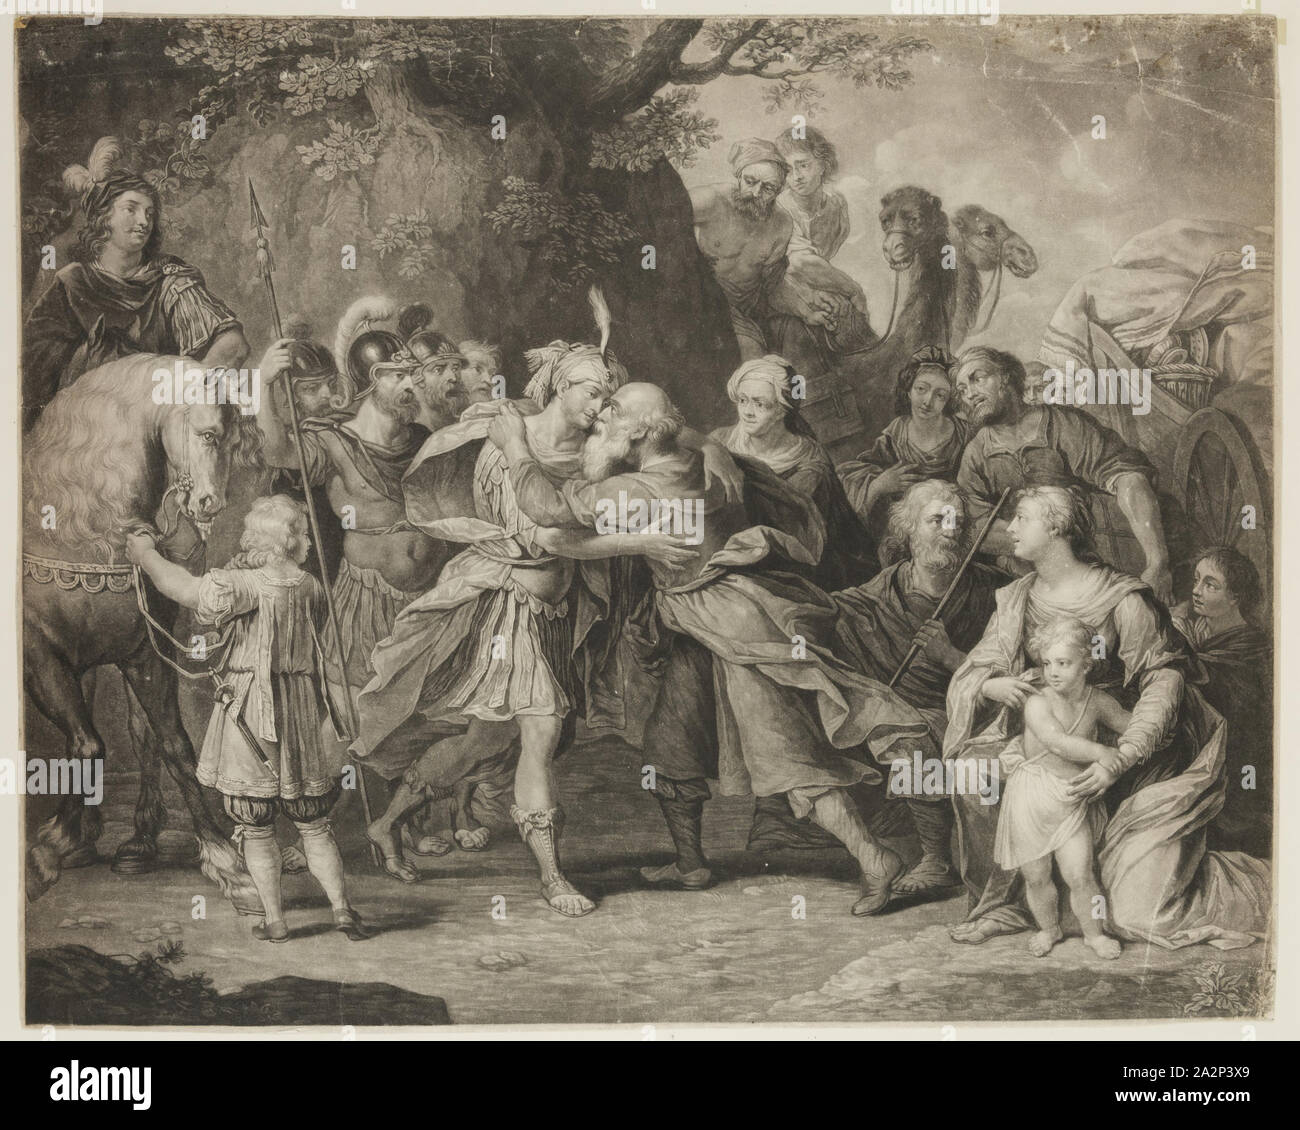 Richard Earlom, anglais, 1743 - 1822, après Peter Paul Rubens, flamand, 1577-1640, salles de Jacob et Joseph, 18e/19e siècle, manière noire imprimée en noir sur papier vélin, image : 19 x 23 3/4 in Banque D'Images